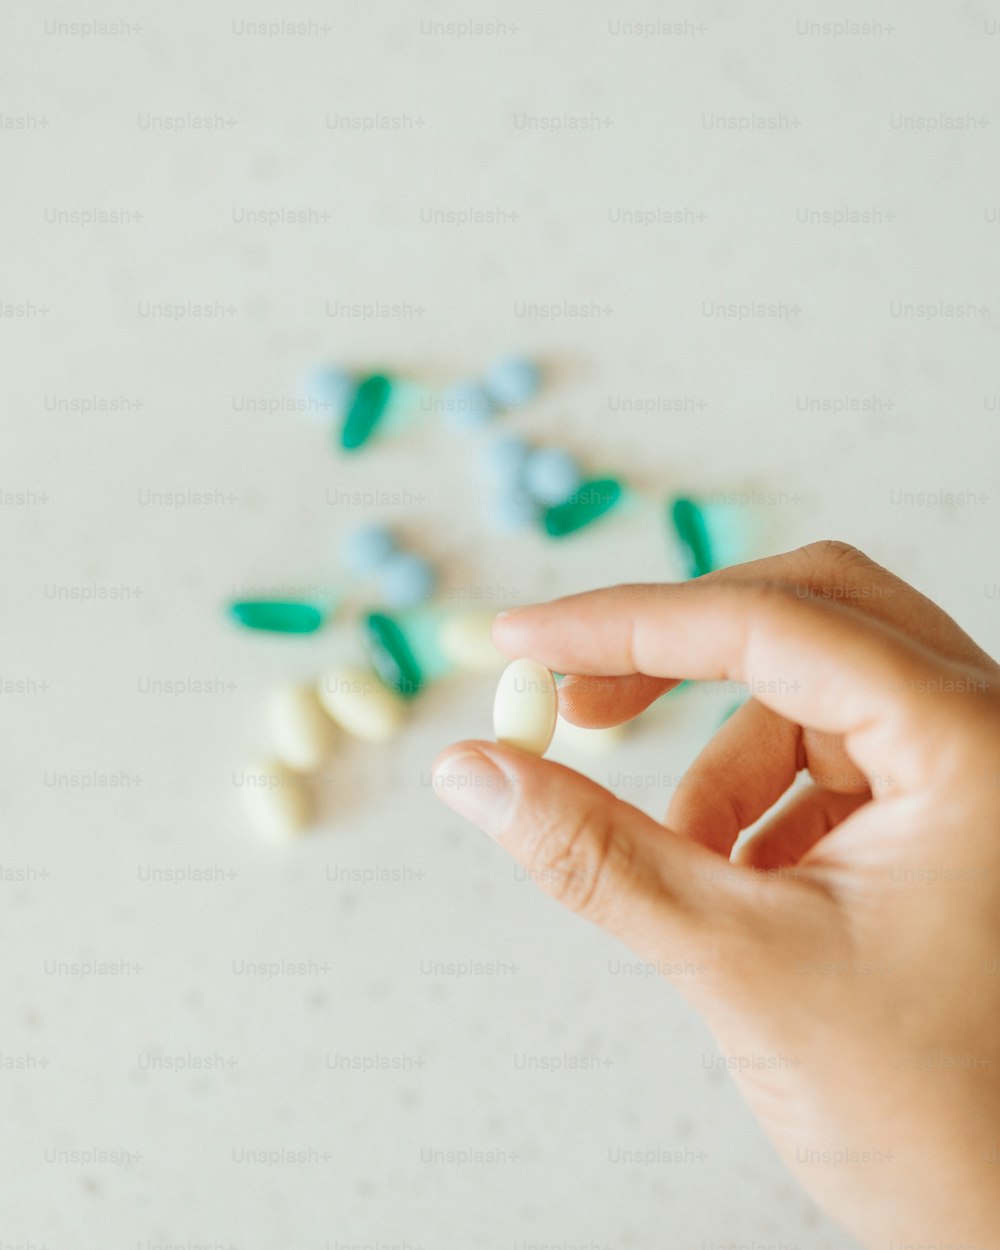 Una mano sostiene una pequeña píldora con píldoras verdes y blancas